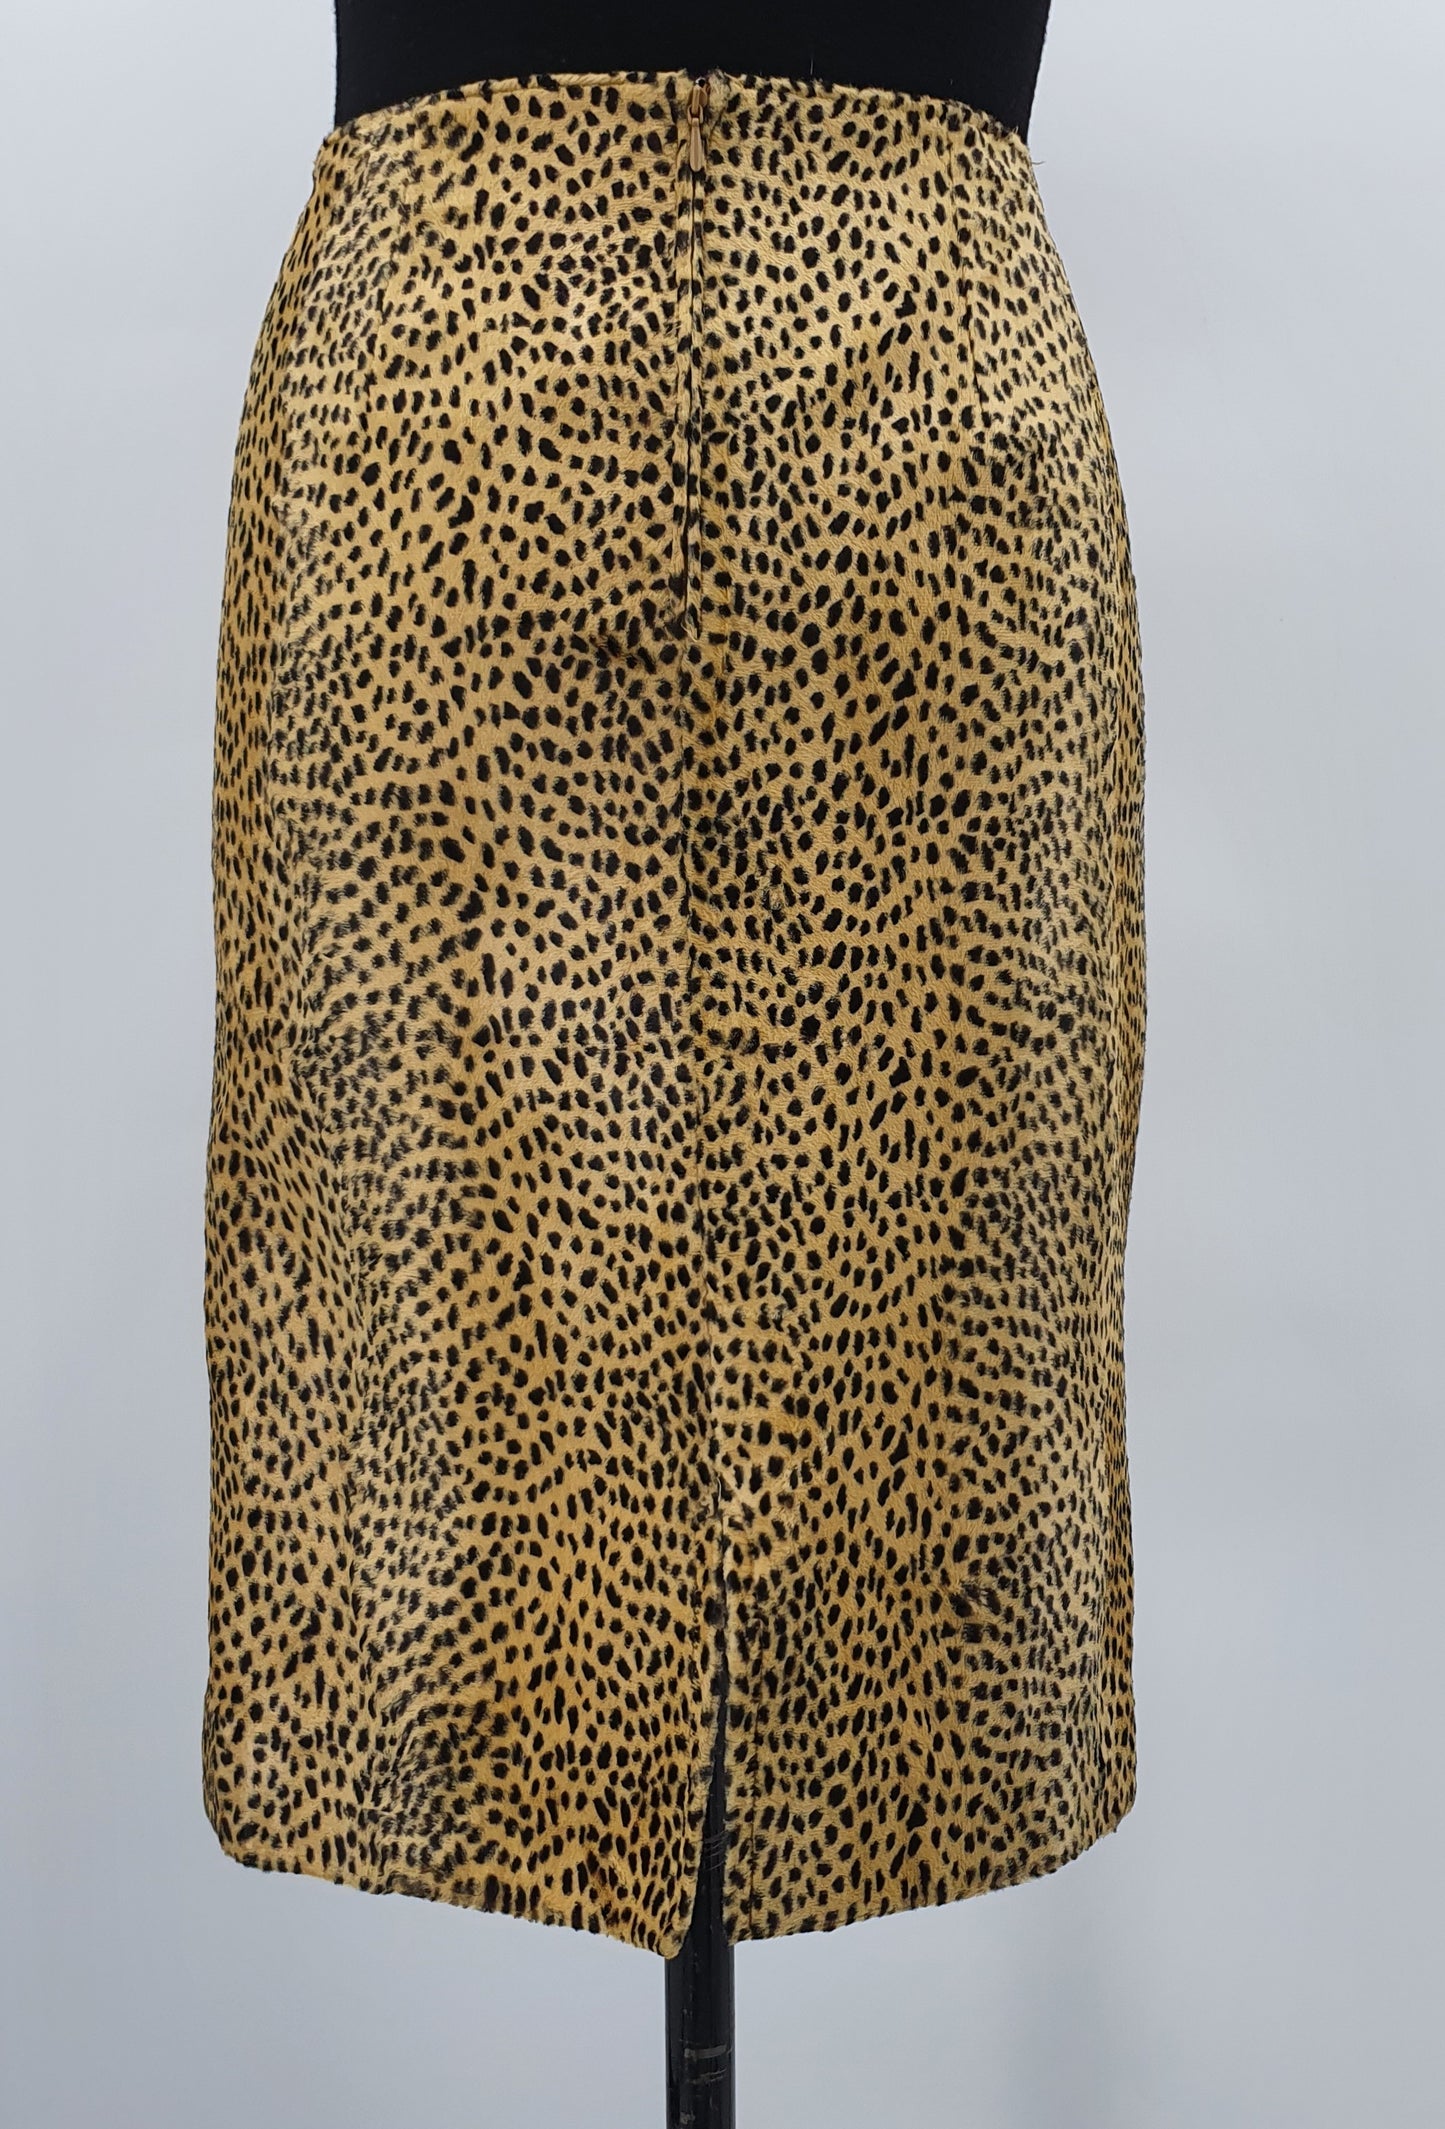 Leopardikuvioinen hame, 80-90-luku, vyöt.ymp. 90cm, kokoarvio 44